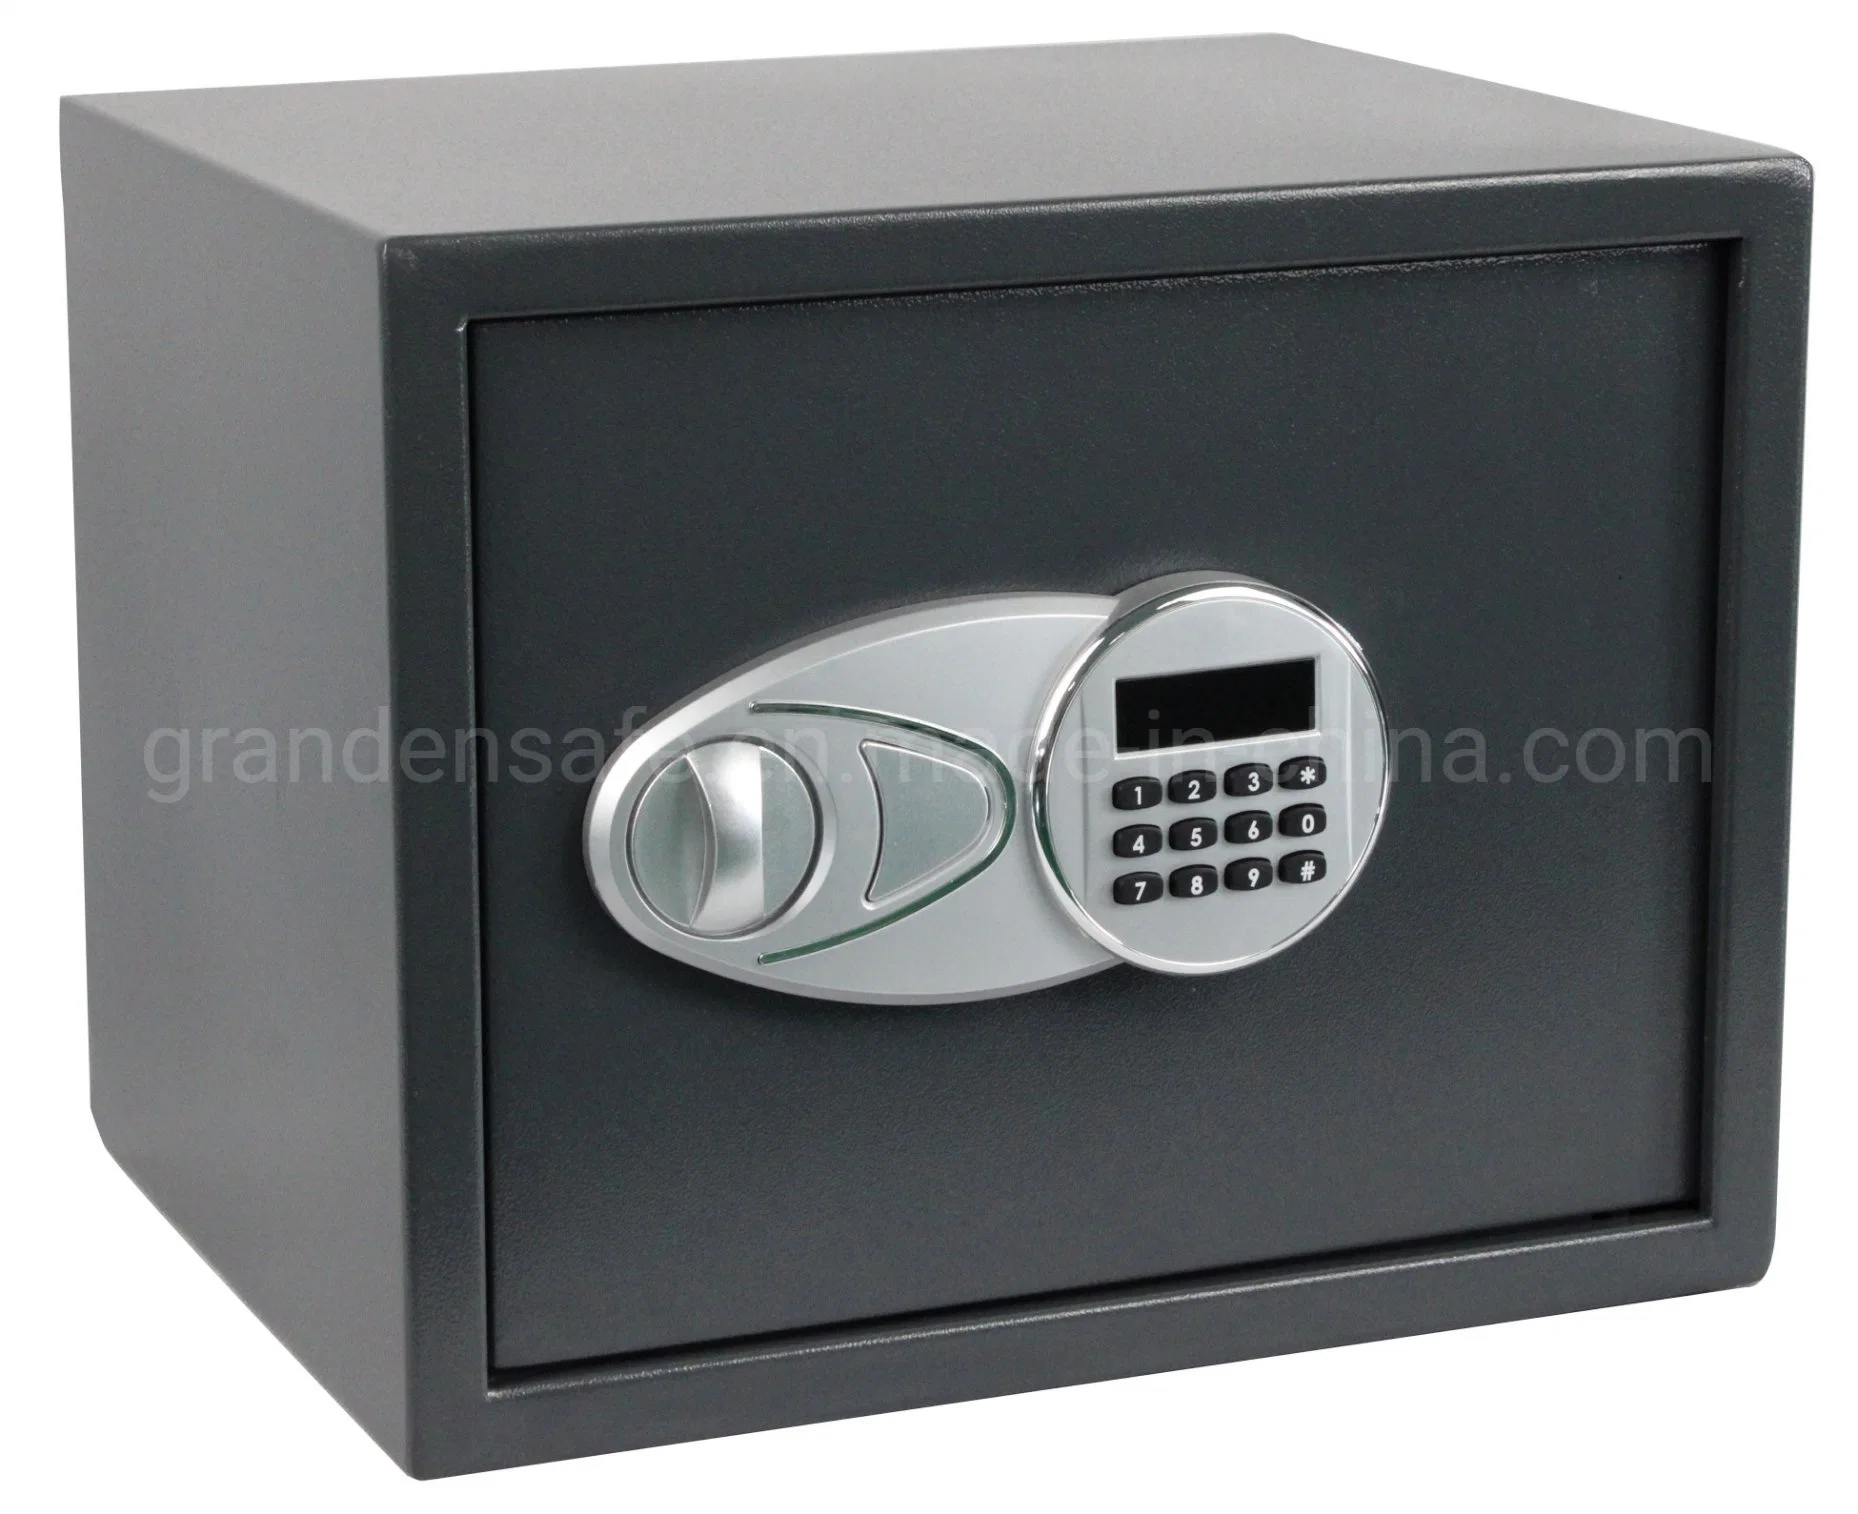 Caixa de segurança digital eletrónica (G-30EI) com visor LCD para casa Ou uso do escritório ou do Hotel